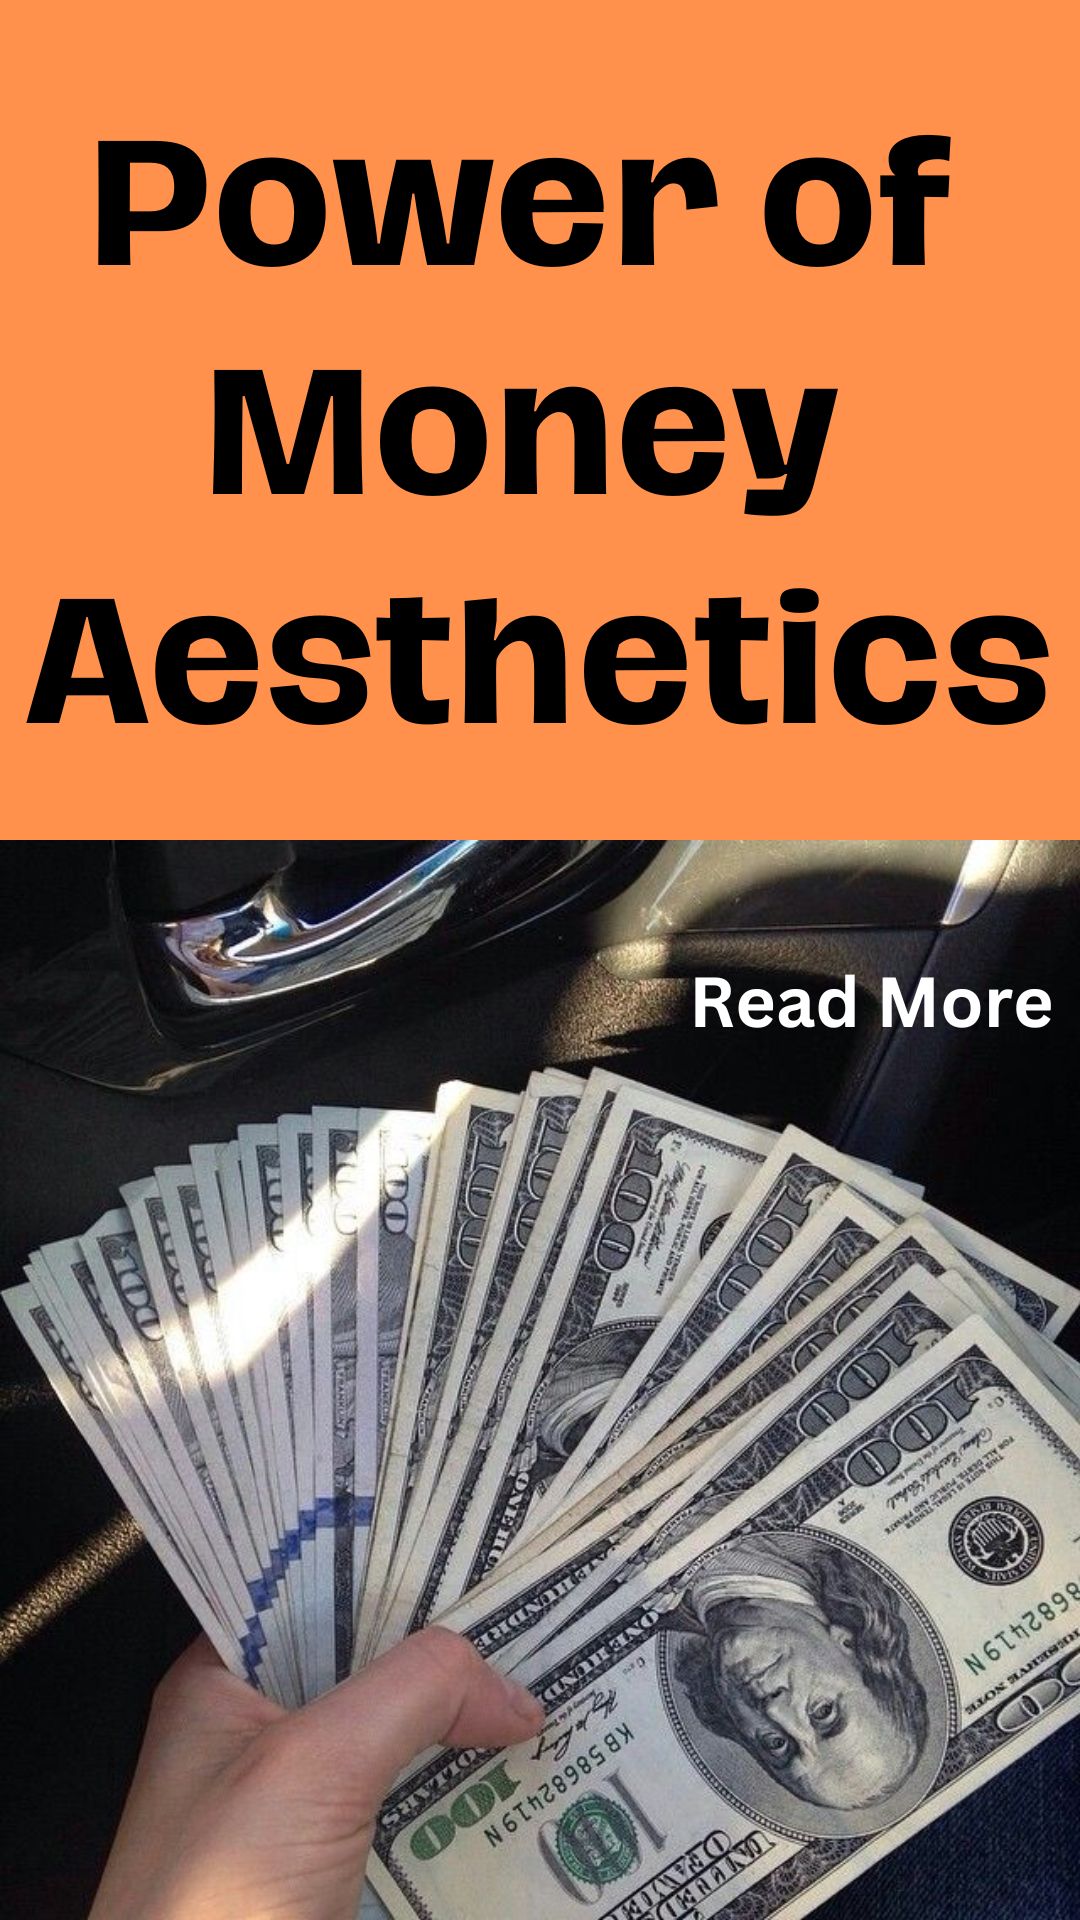 Power of Money Aesthetics